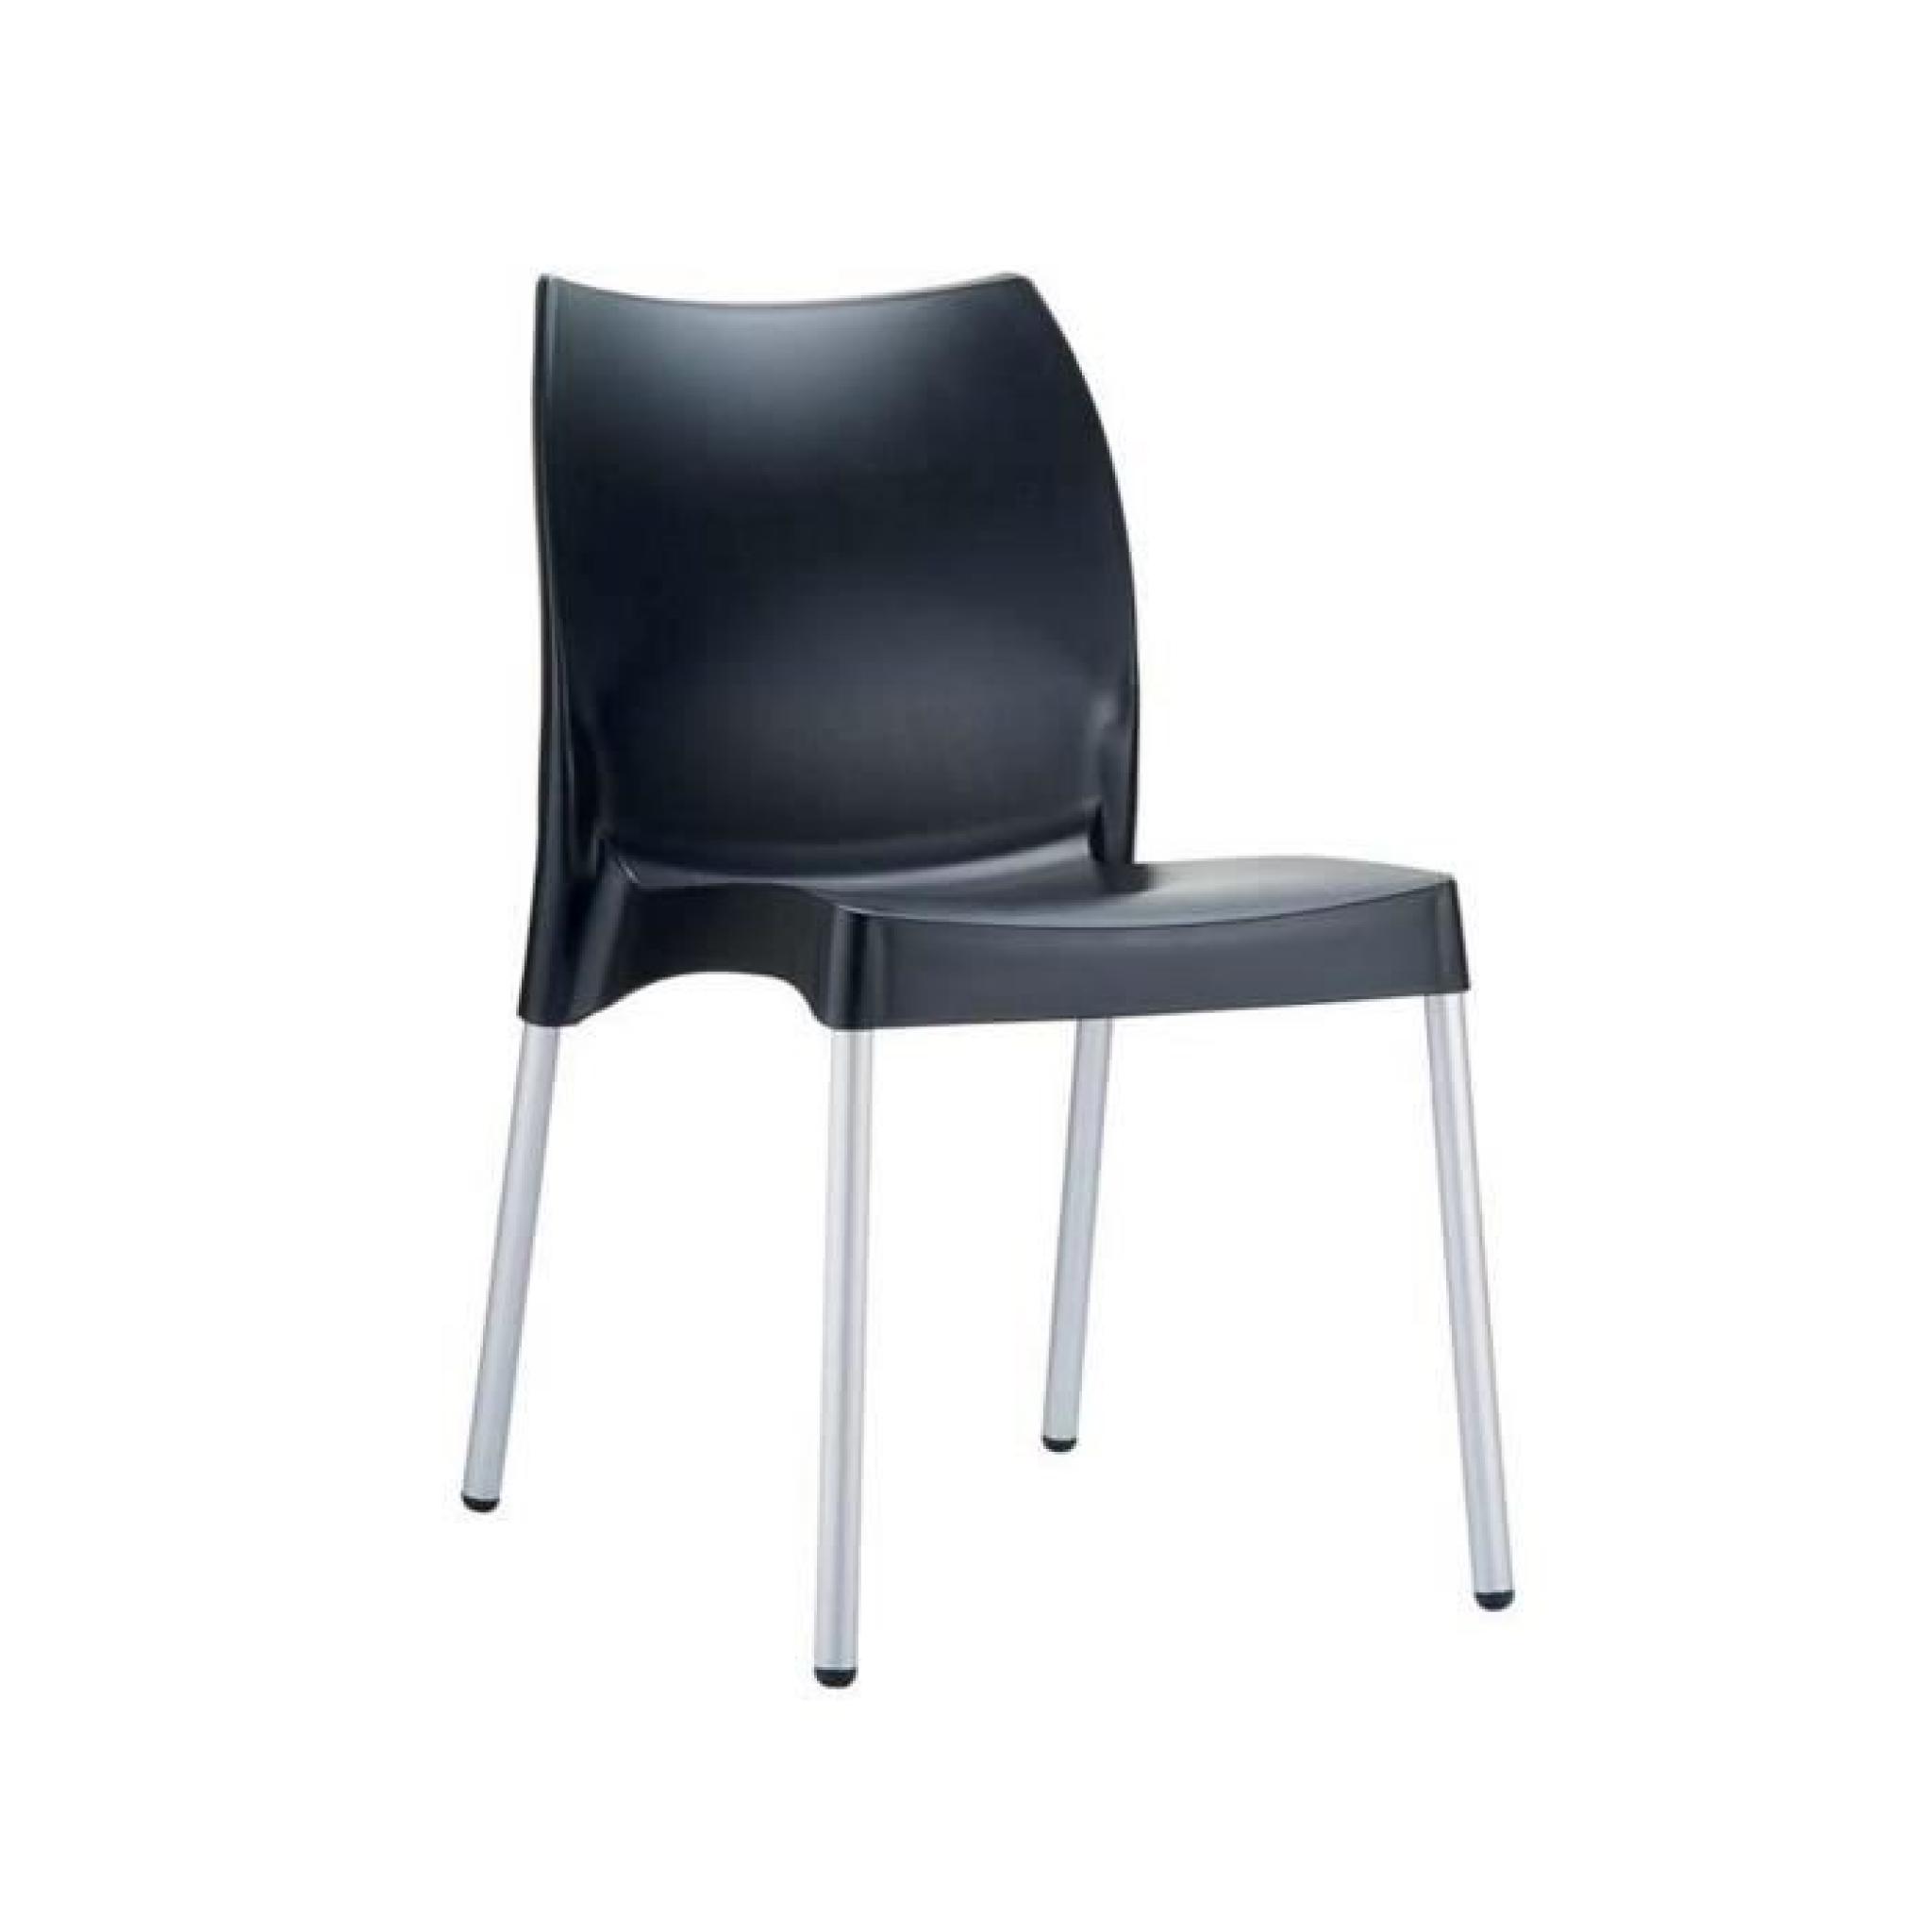 Chaise de jardin avec siège en plastique noir - 80 x 44 x 53 cm 